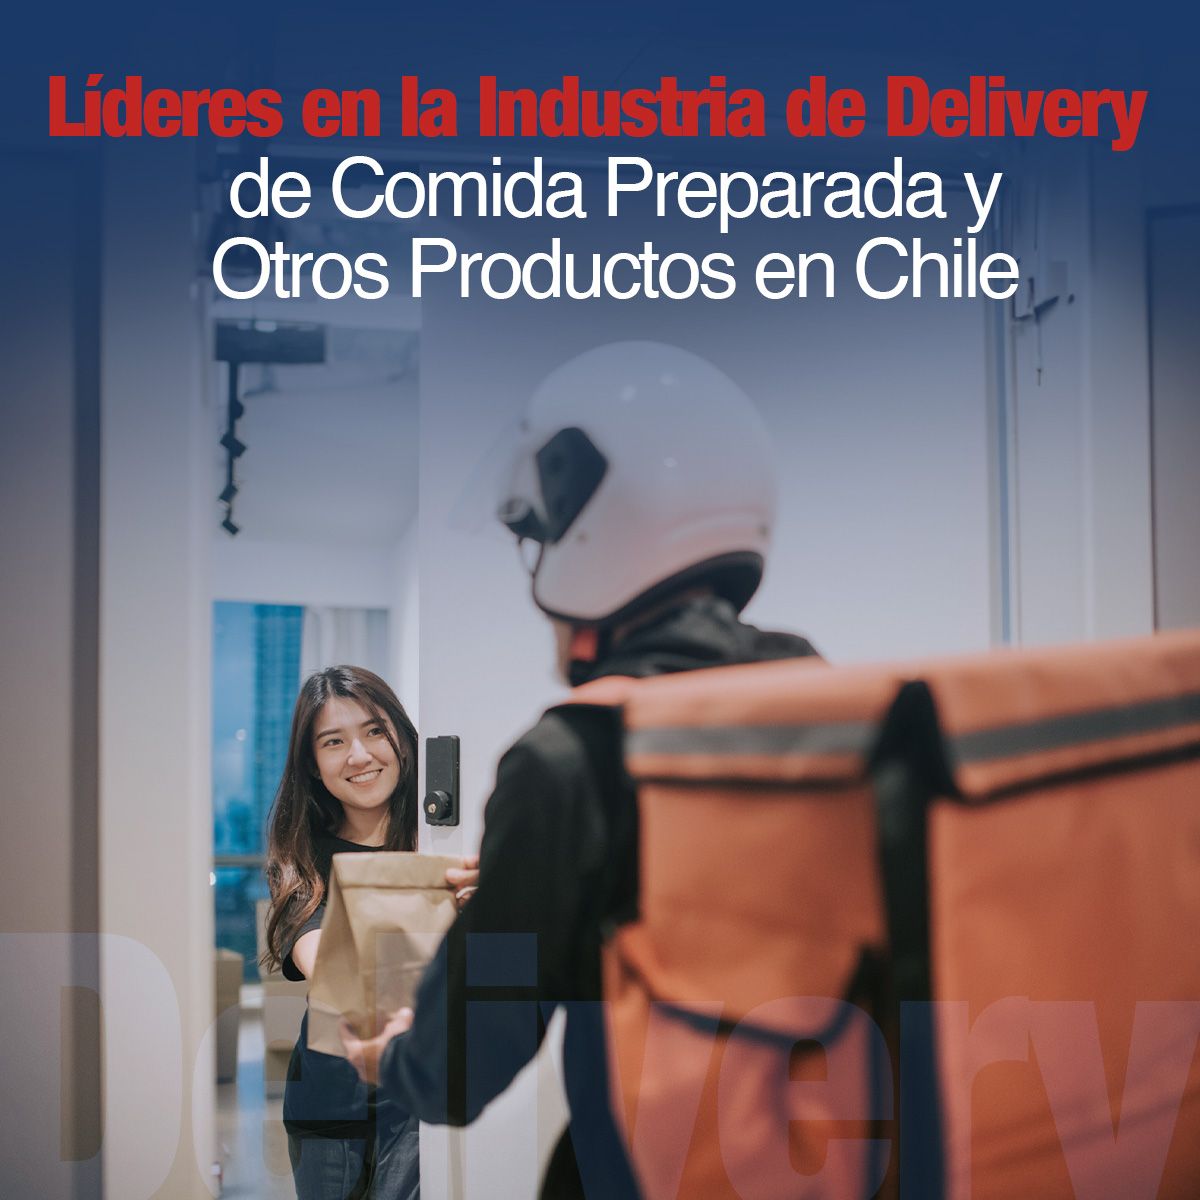 Líderes en la Industria de Delivery de Comida Preparada y Otros Productos en Chile